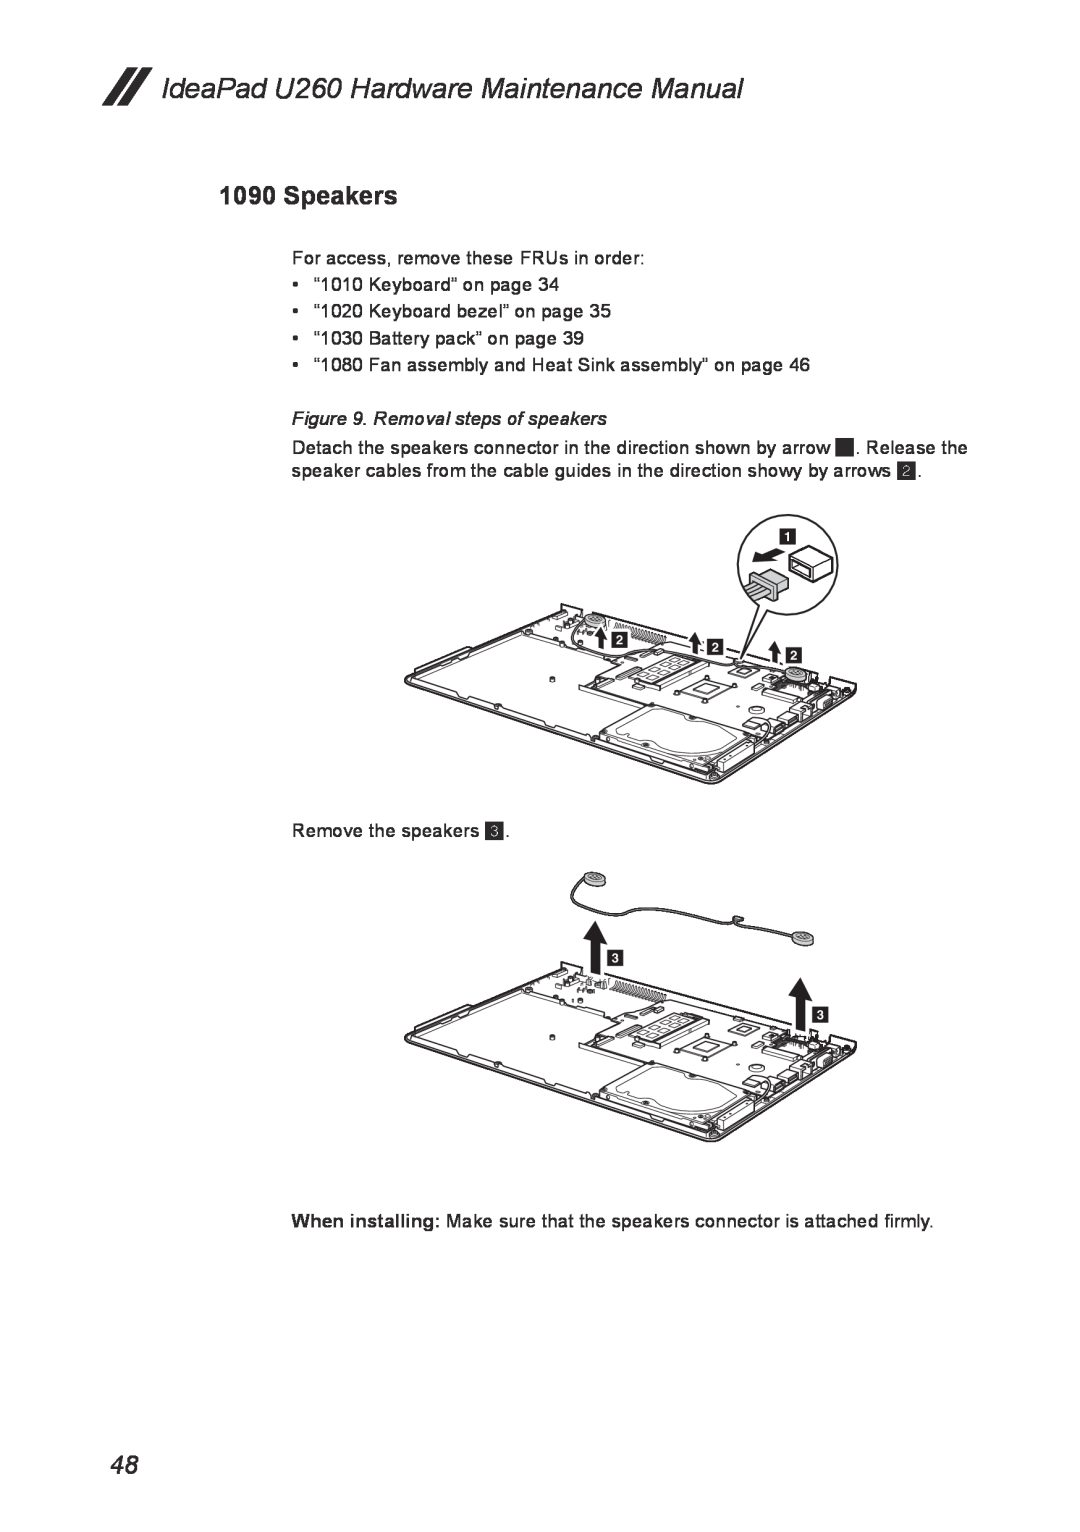 Lenovo manual Speakers, Removal steps of speakers, IdeaPad U260 Hardware Maintenance Manual 